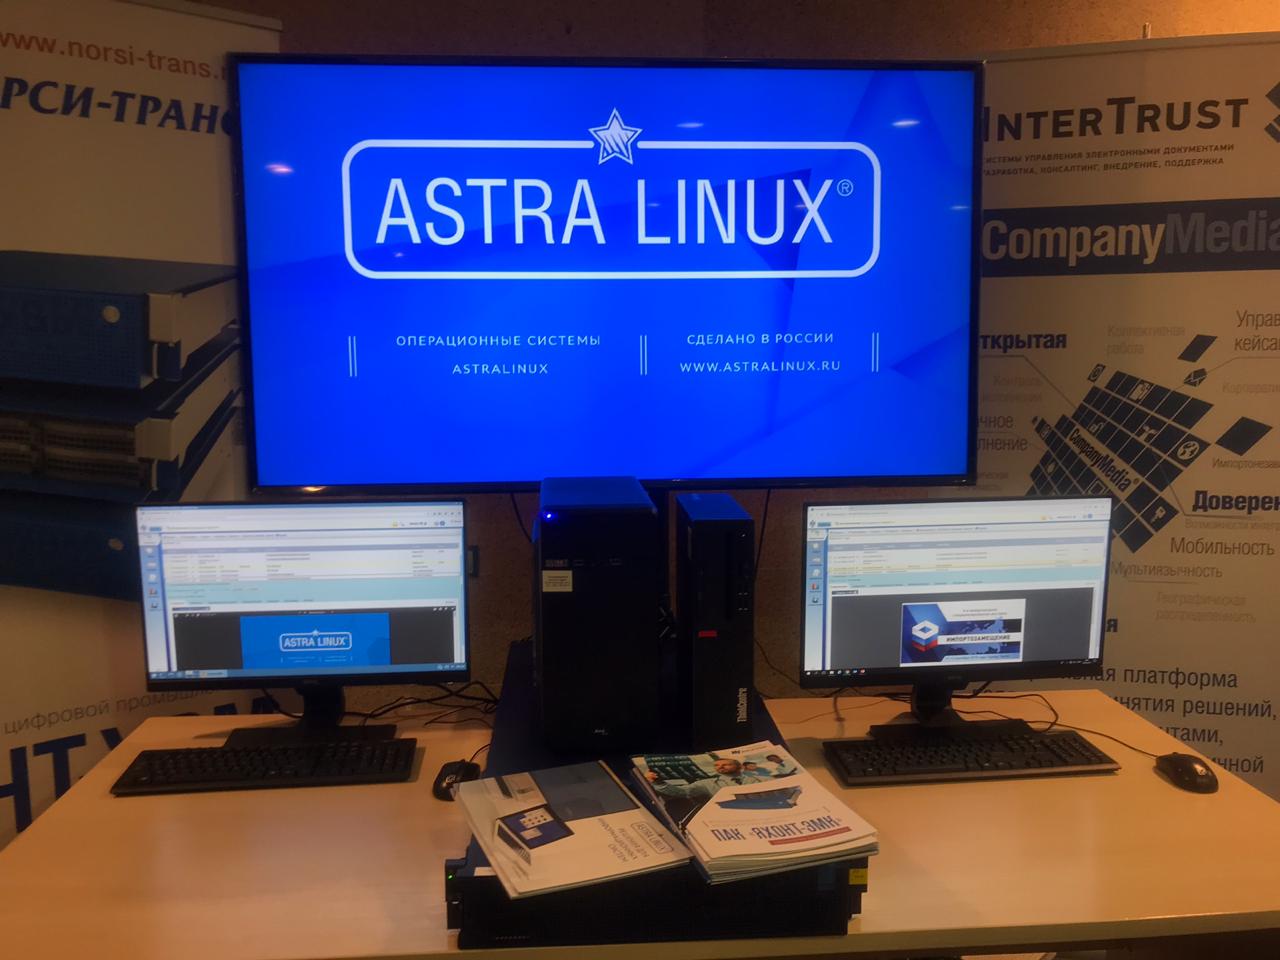 Astra Linux и «КонсультантПлюс» – новый программный стек на базе российских решений